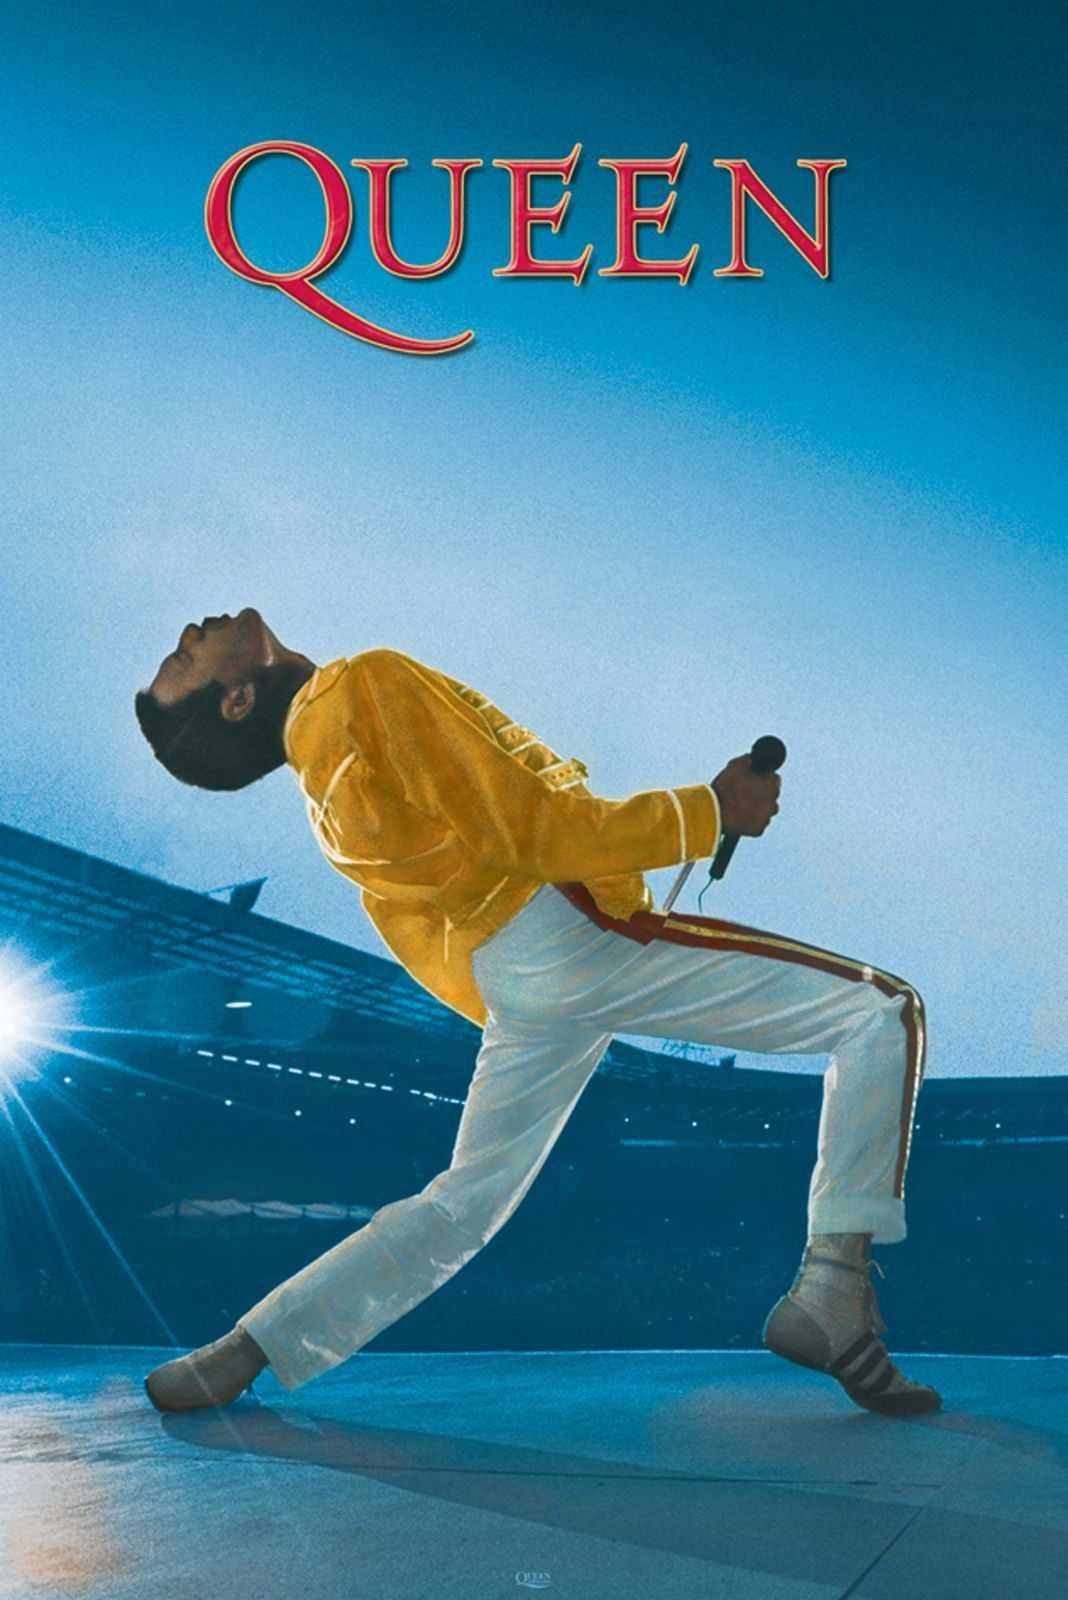 Queen Freddie Mercury Wembley Nowe A1